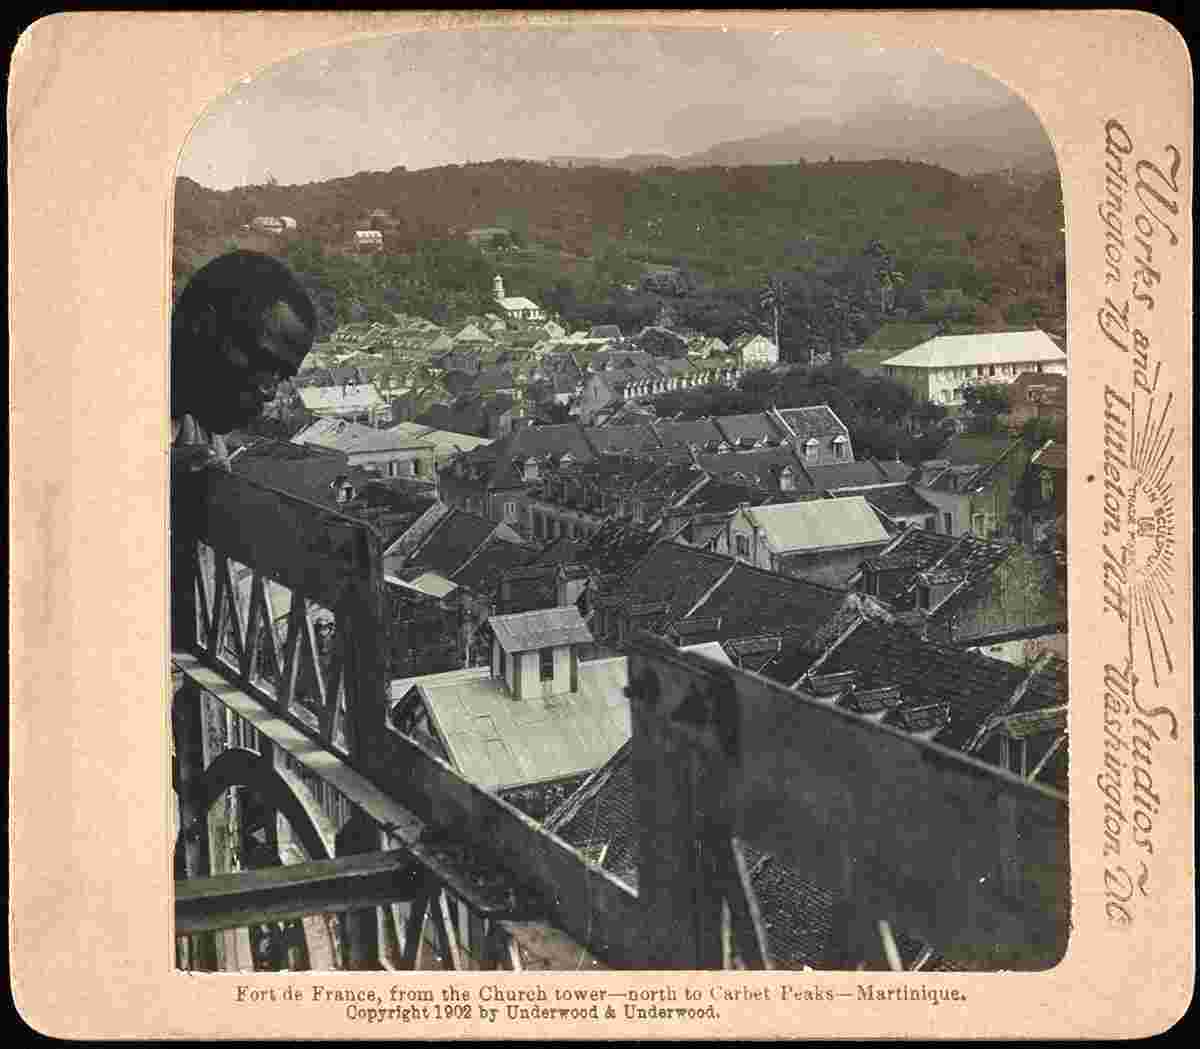 Fort-de-France. Fort de France, du clocher de l'église - nord aux pics du Carbet, vers 1900